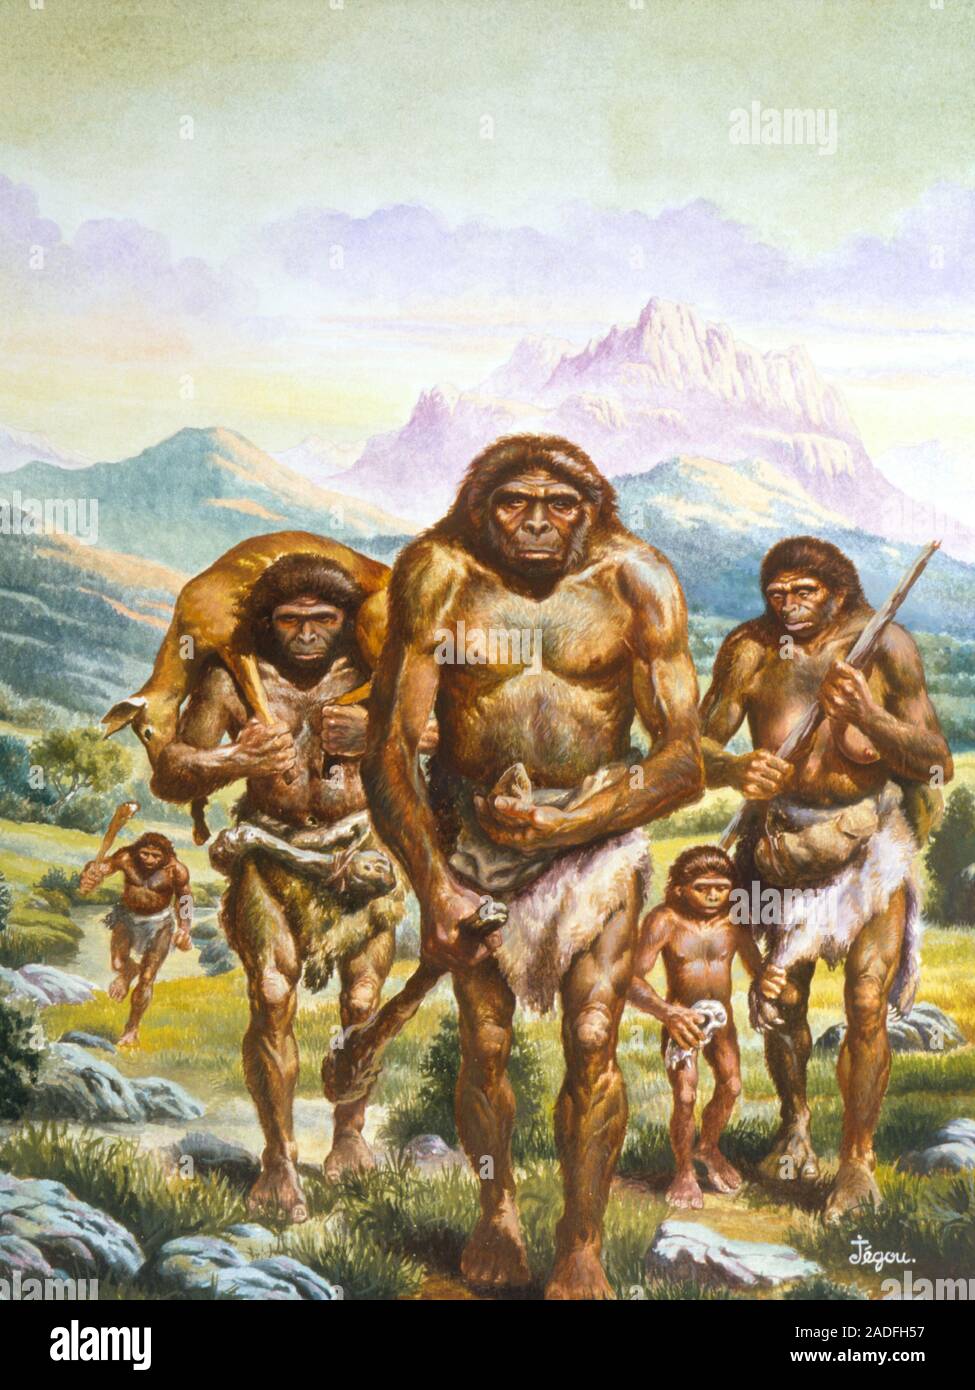 Древнейший человек появился на территории. Австралопитек неандерталец хомо сапиенс. Племя хомо сапиенс. Австралопитеки Зденека Буриана.